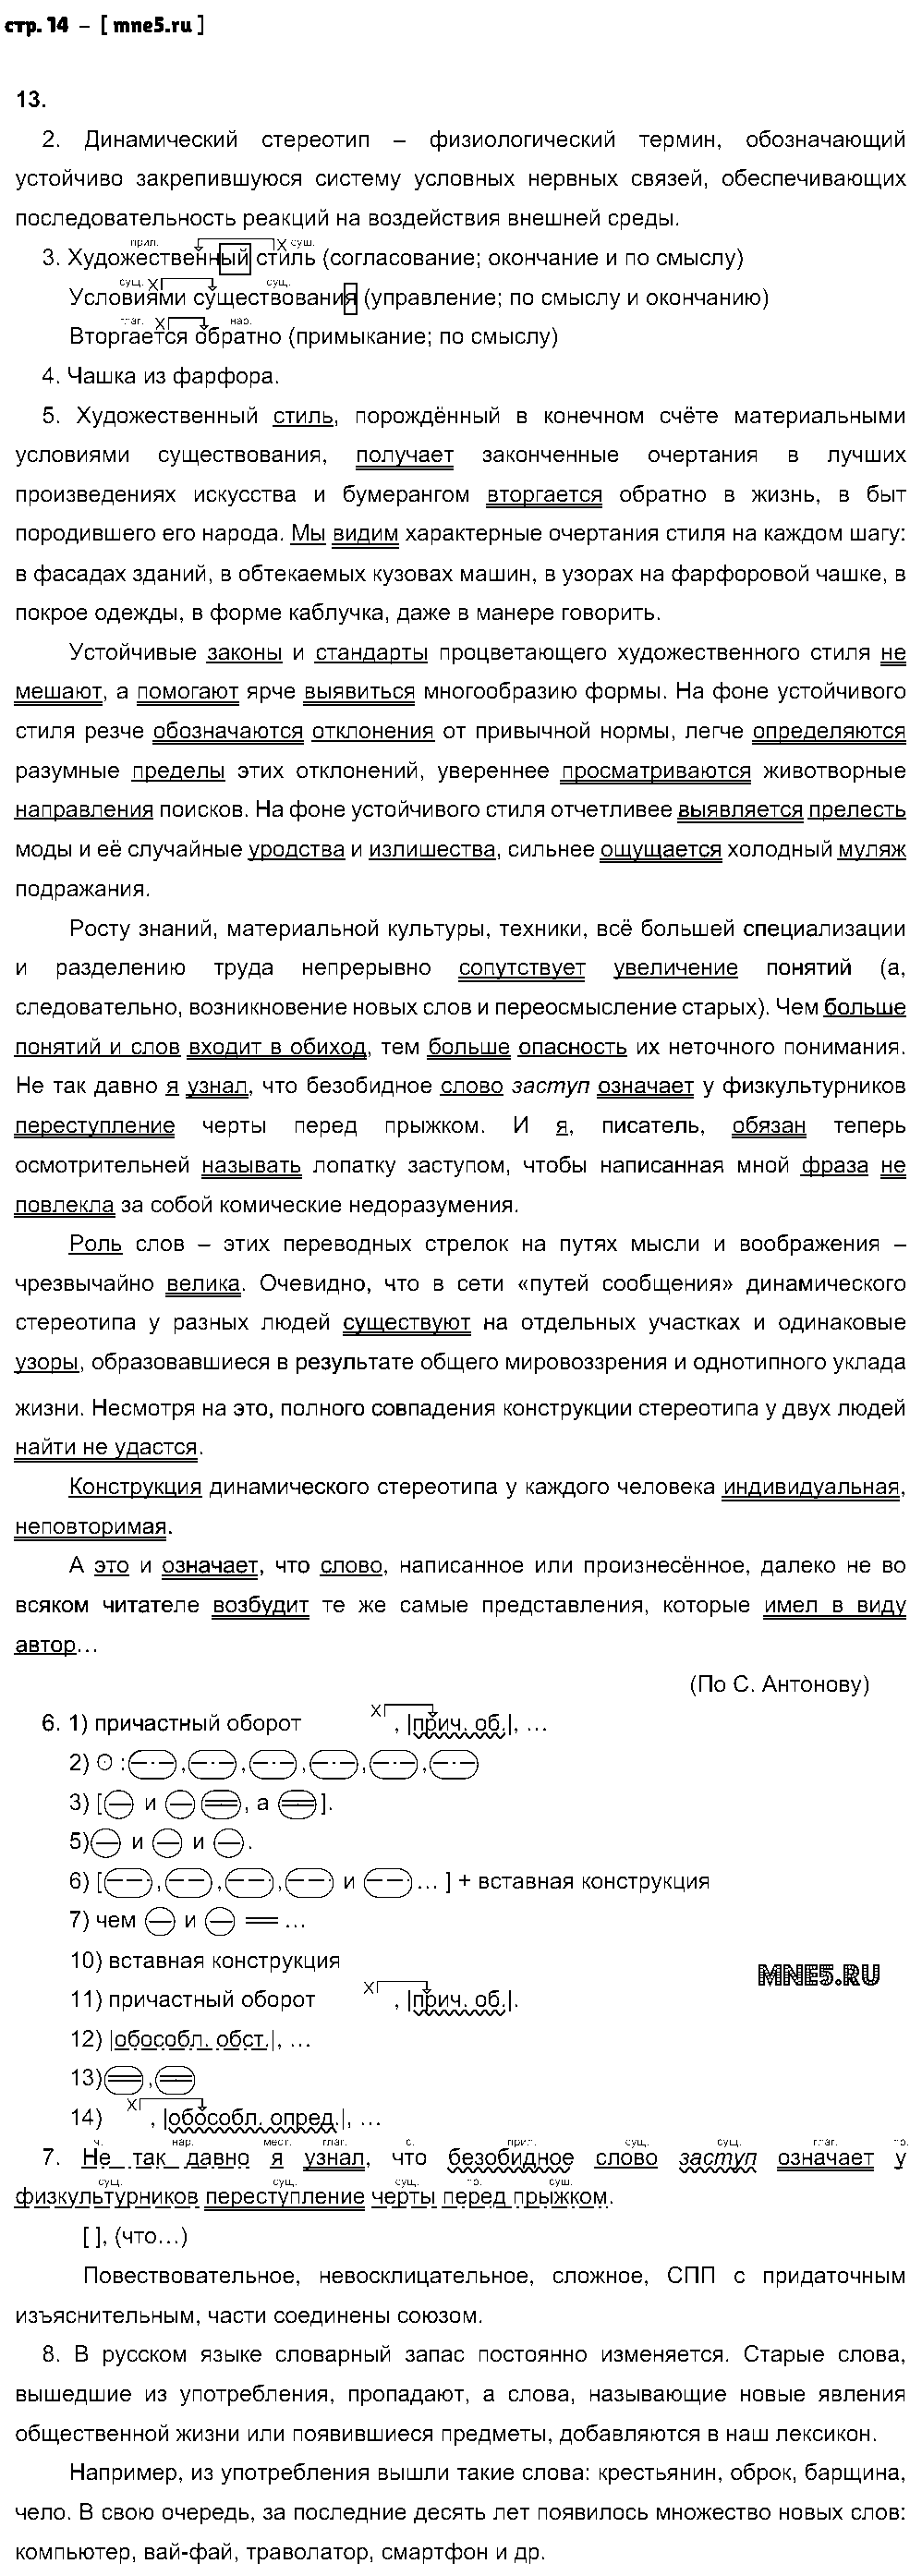 ГДЗ Русский язык 9 класс - стр. 14